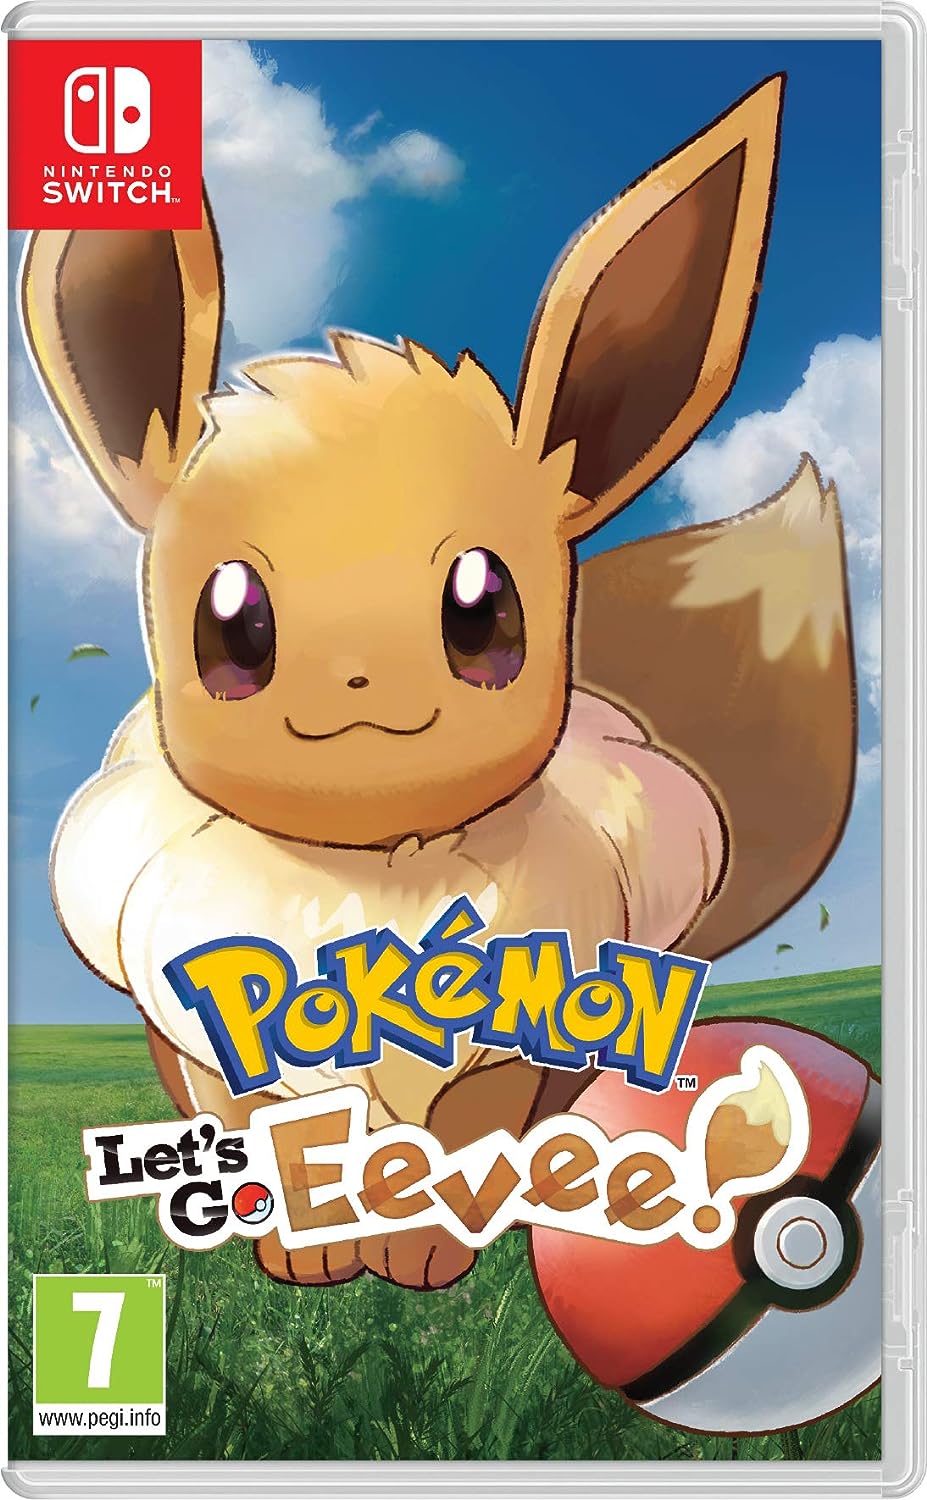 Pokémon: Let’s Go, Eevee! Nintendo Switch Game - 7